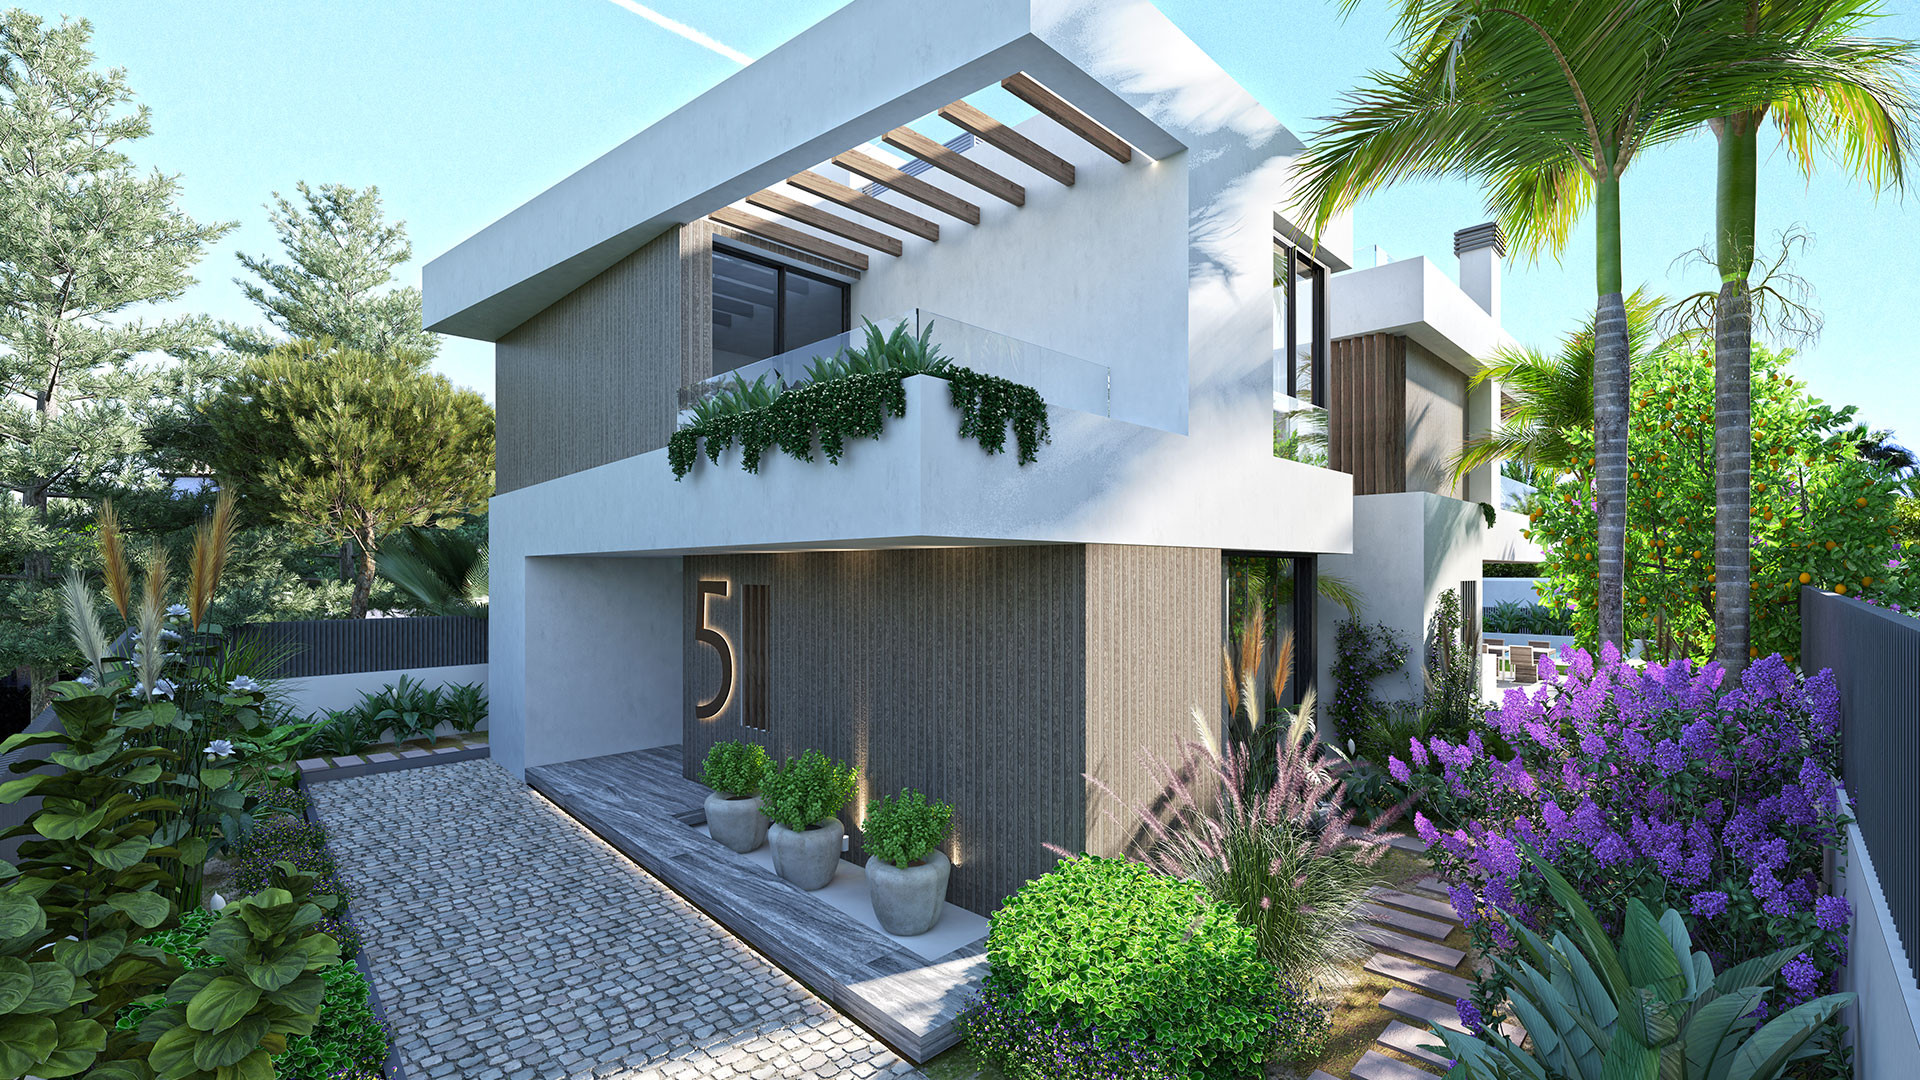 Exclusive project of luxury contemporary detached villas in Puerto Banús